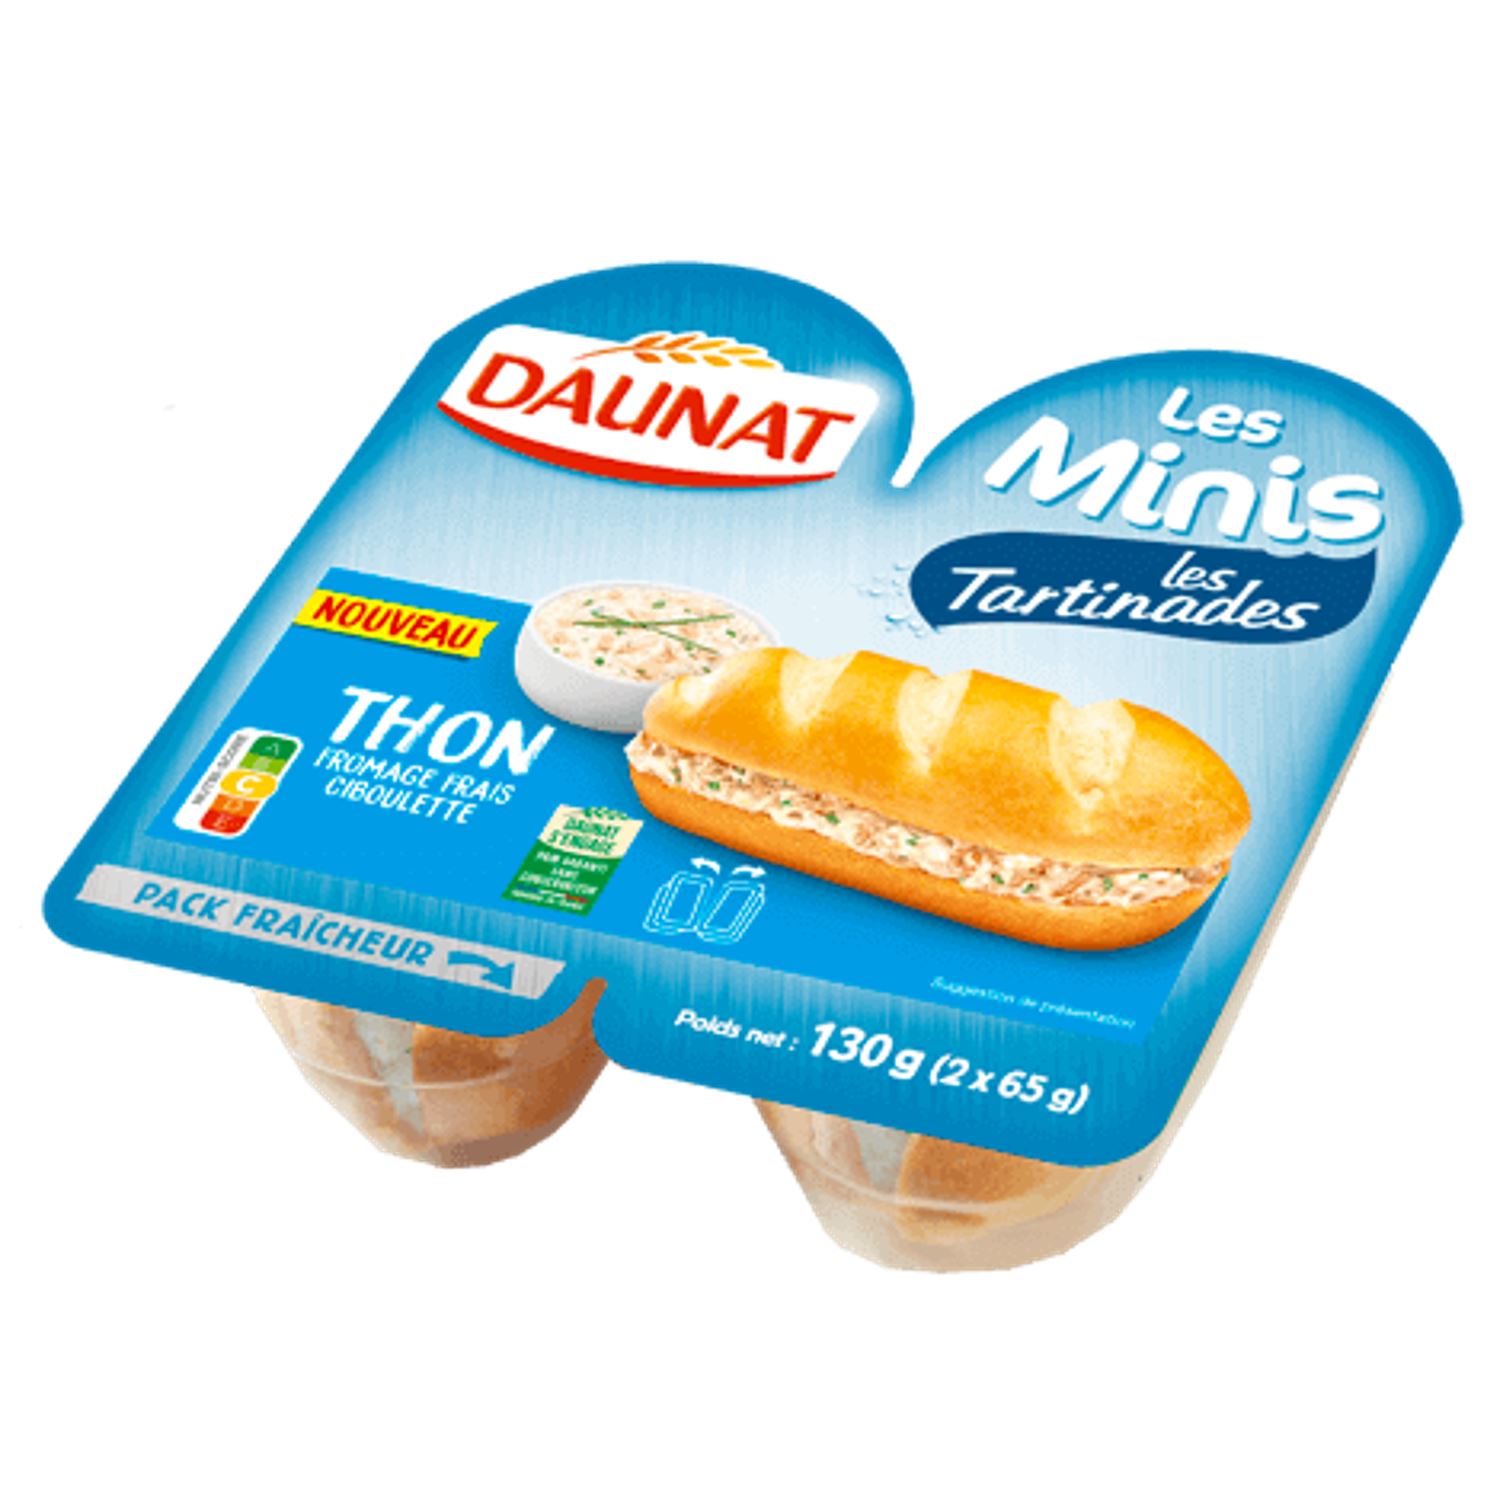 Sandwich mini-baguette thon/fromage frais